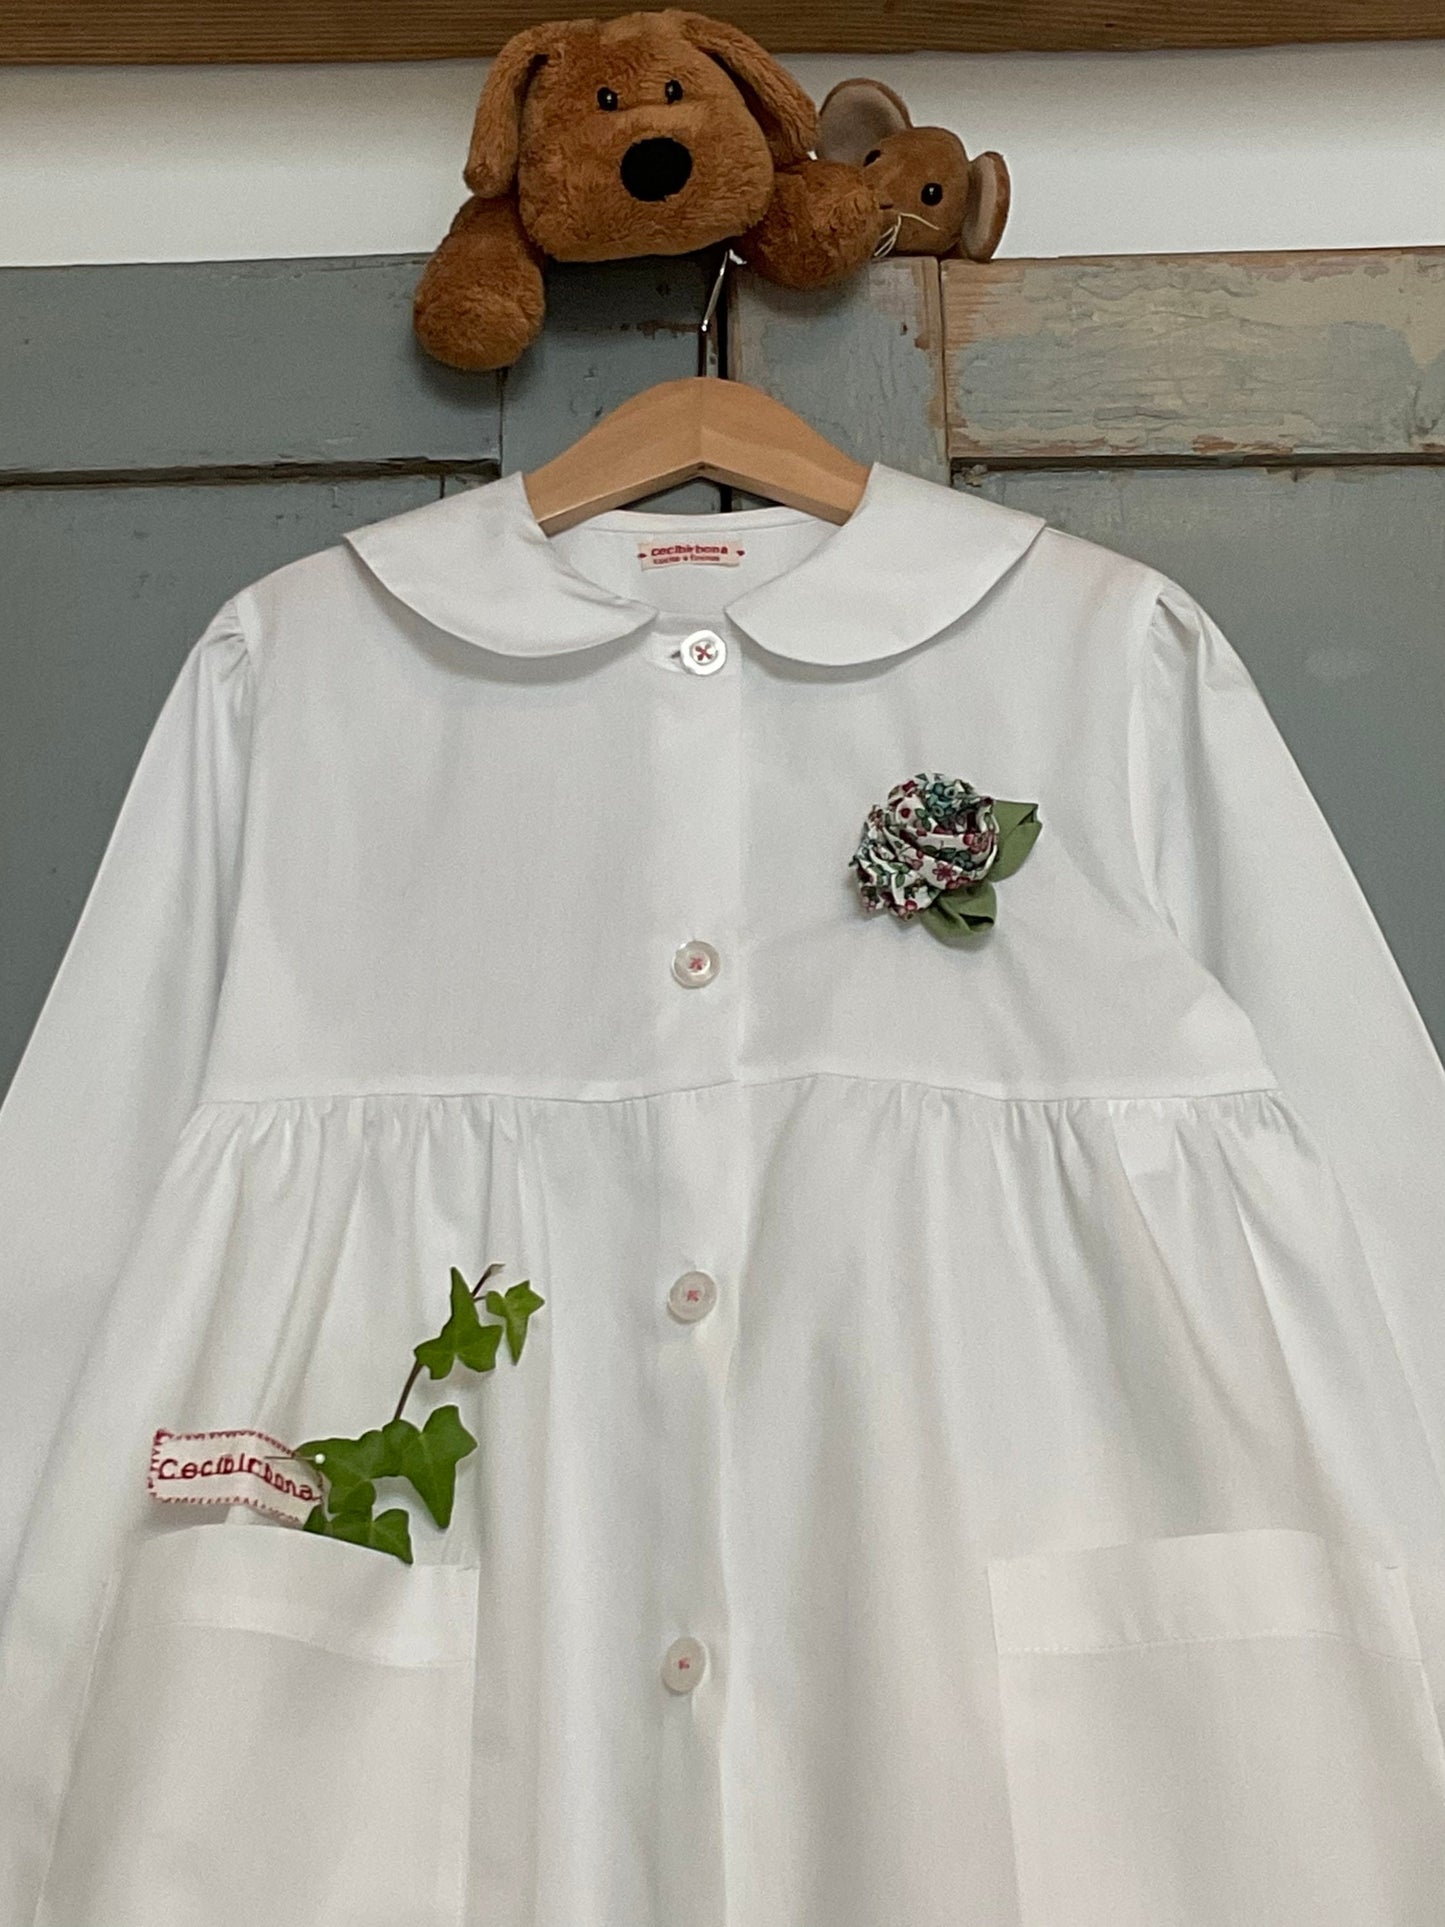 Grembiule bianco, collo tondo, bouquet di fiori per scuola materna ed elementare - grembiulino asilo ed elementari per bimba